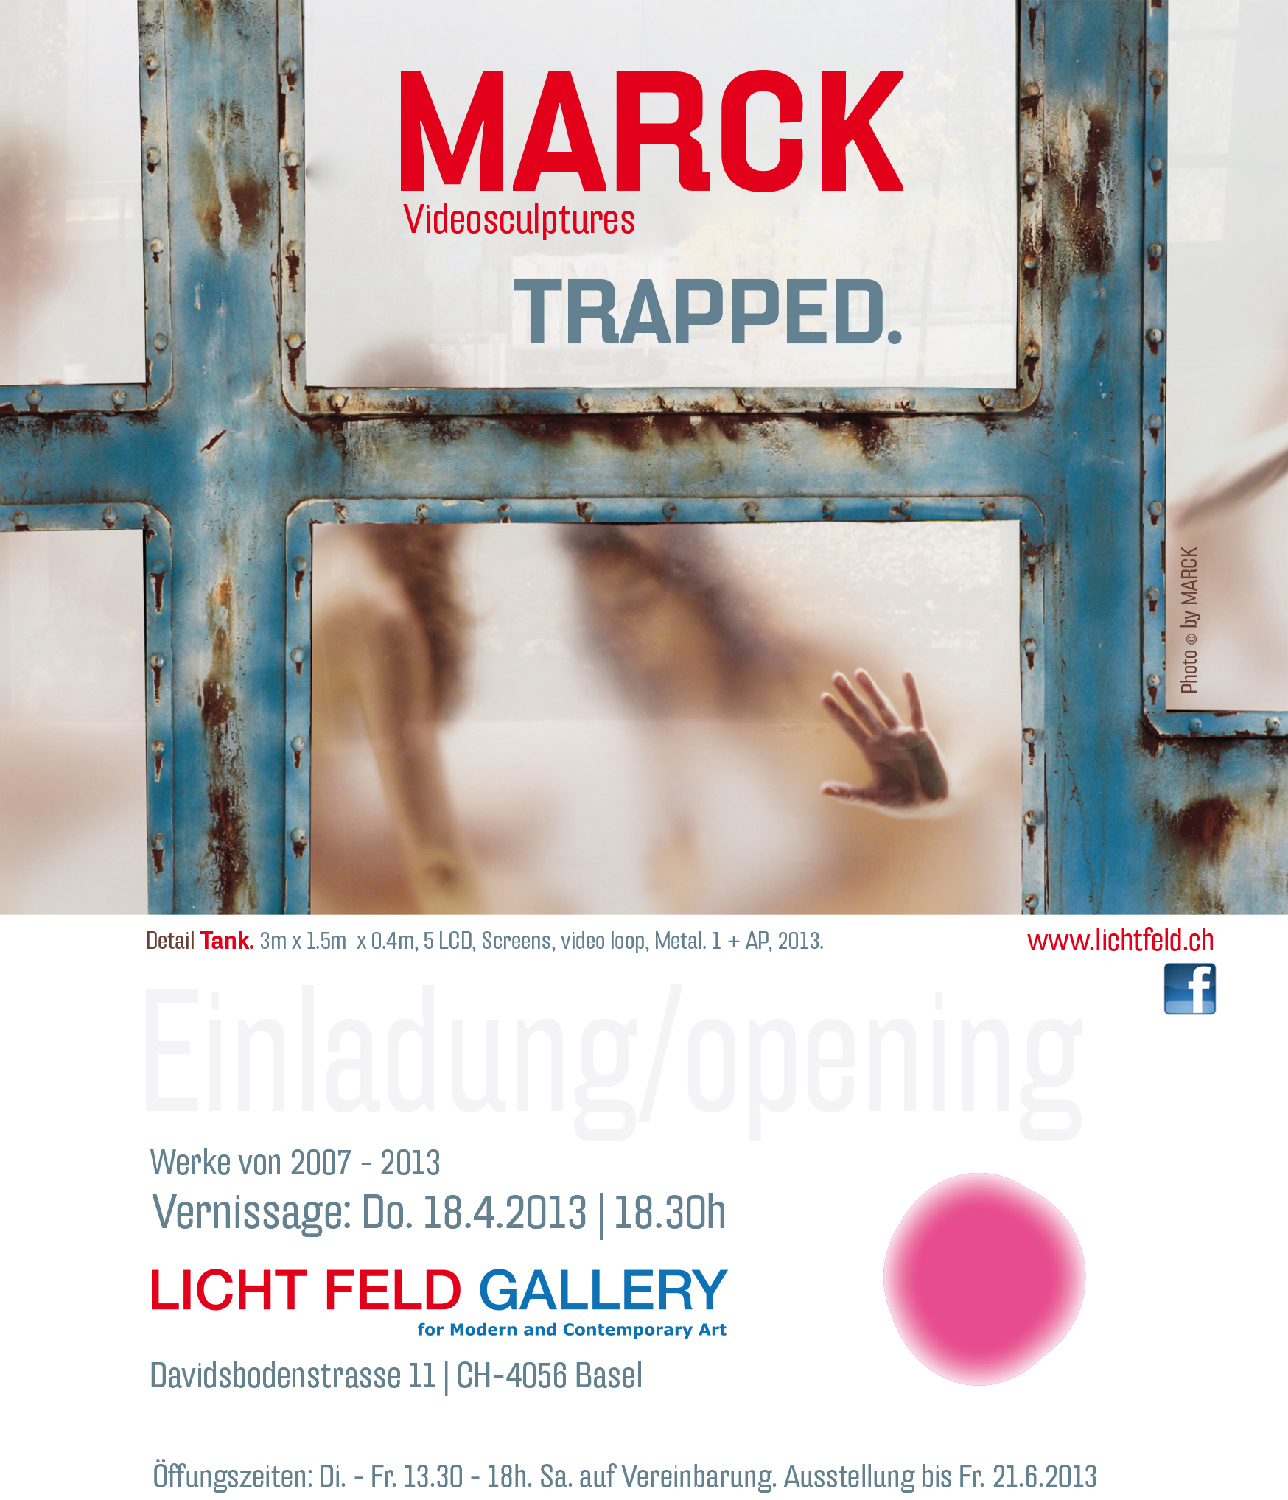 MARCK Exhibition @ Licht Feld Gallery